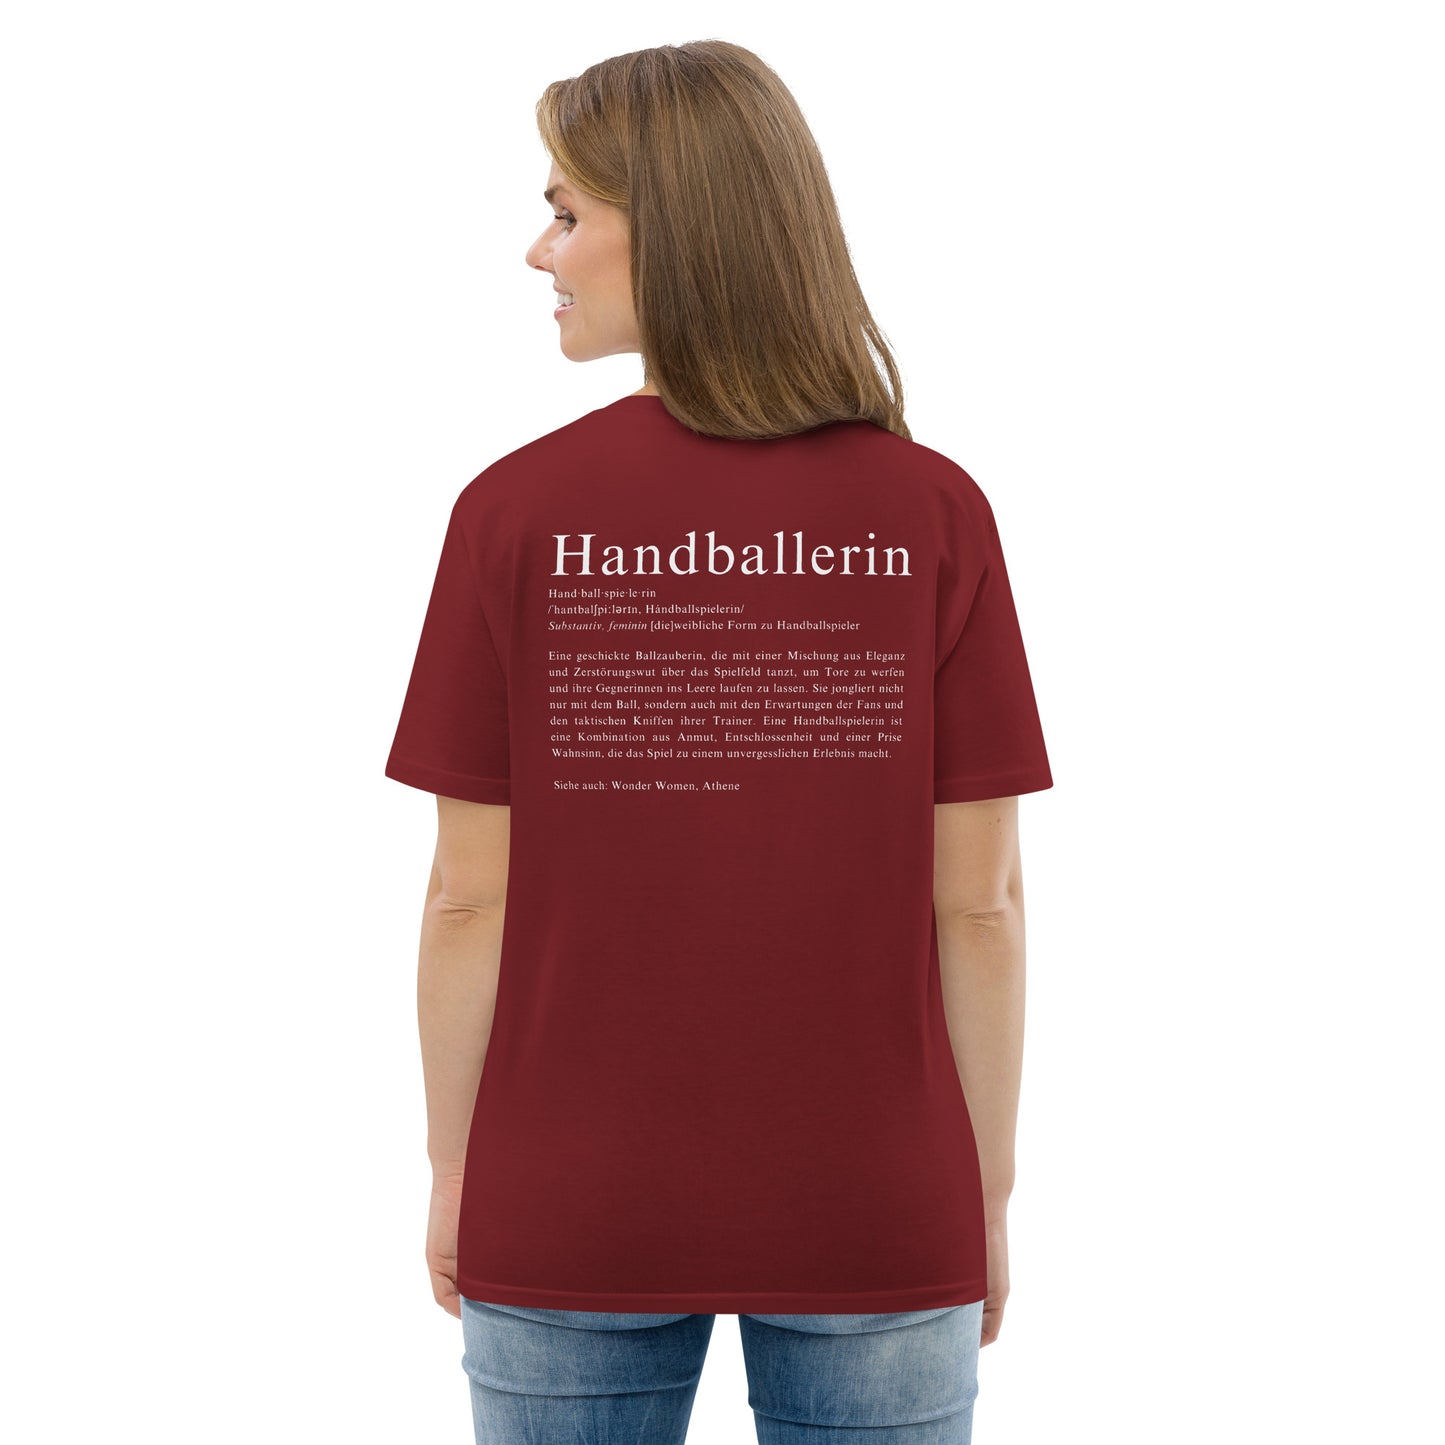 T-Shirt "Handballerin"